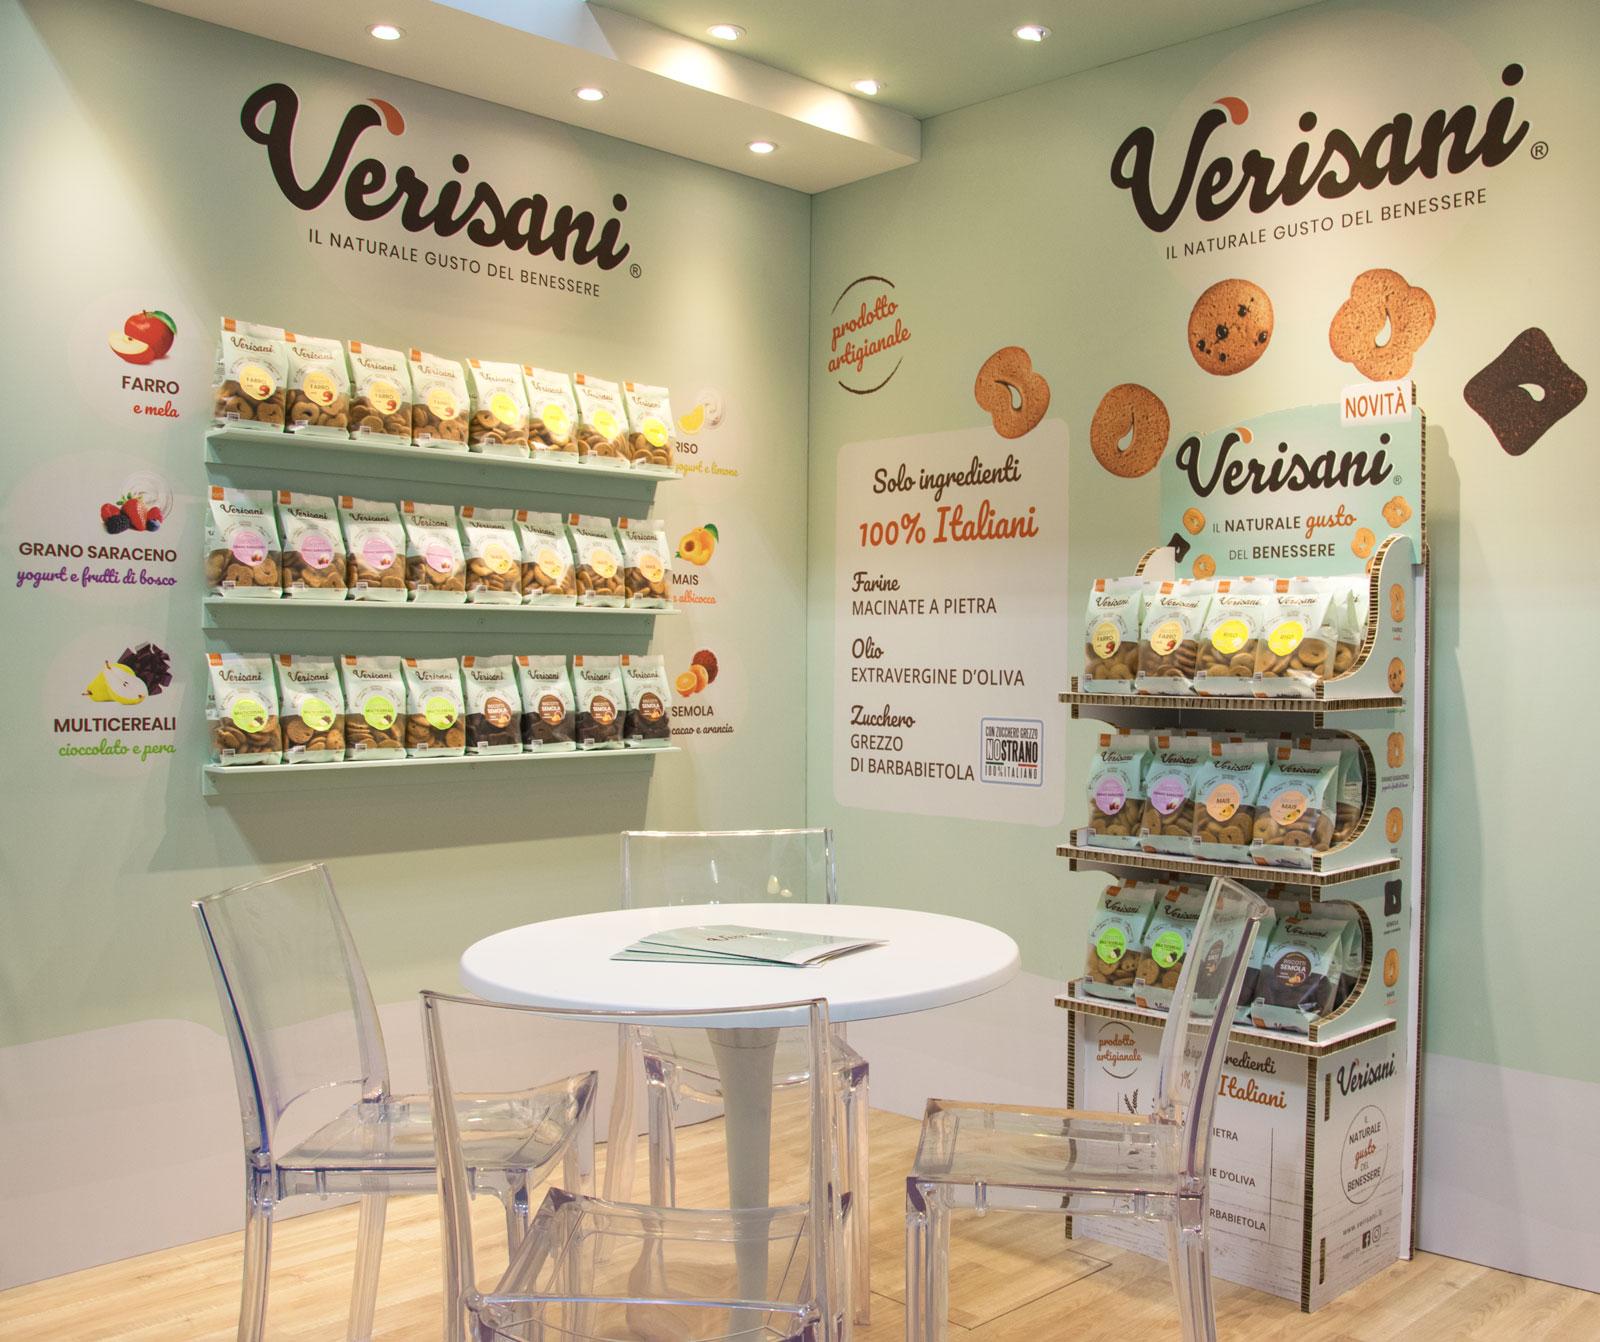 Un angolo dello stand con tavolo e sedie e un’esposizione di biscotti sulle pareti stampate con immagini e grafica